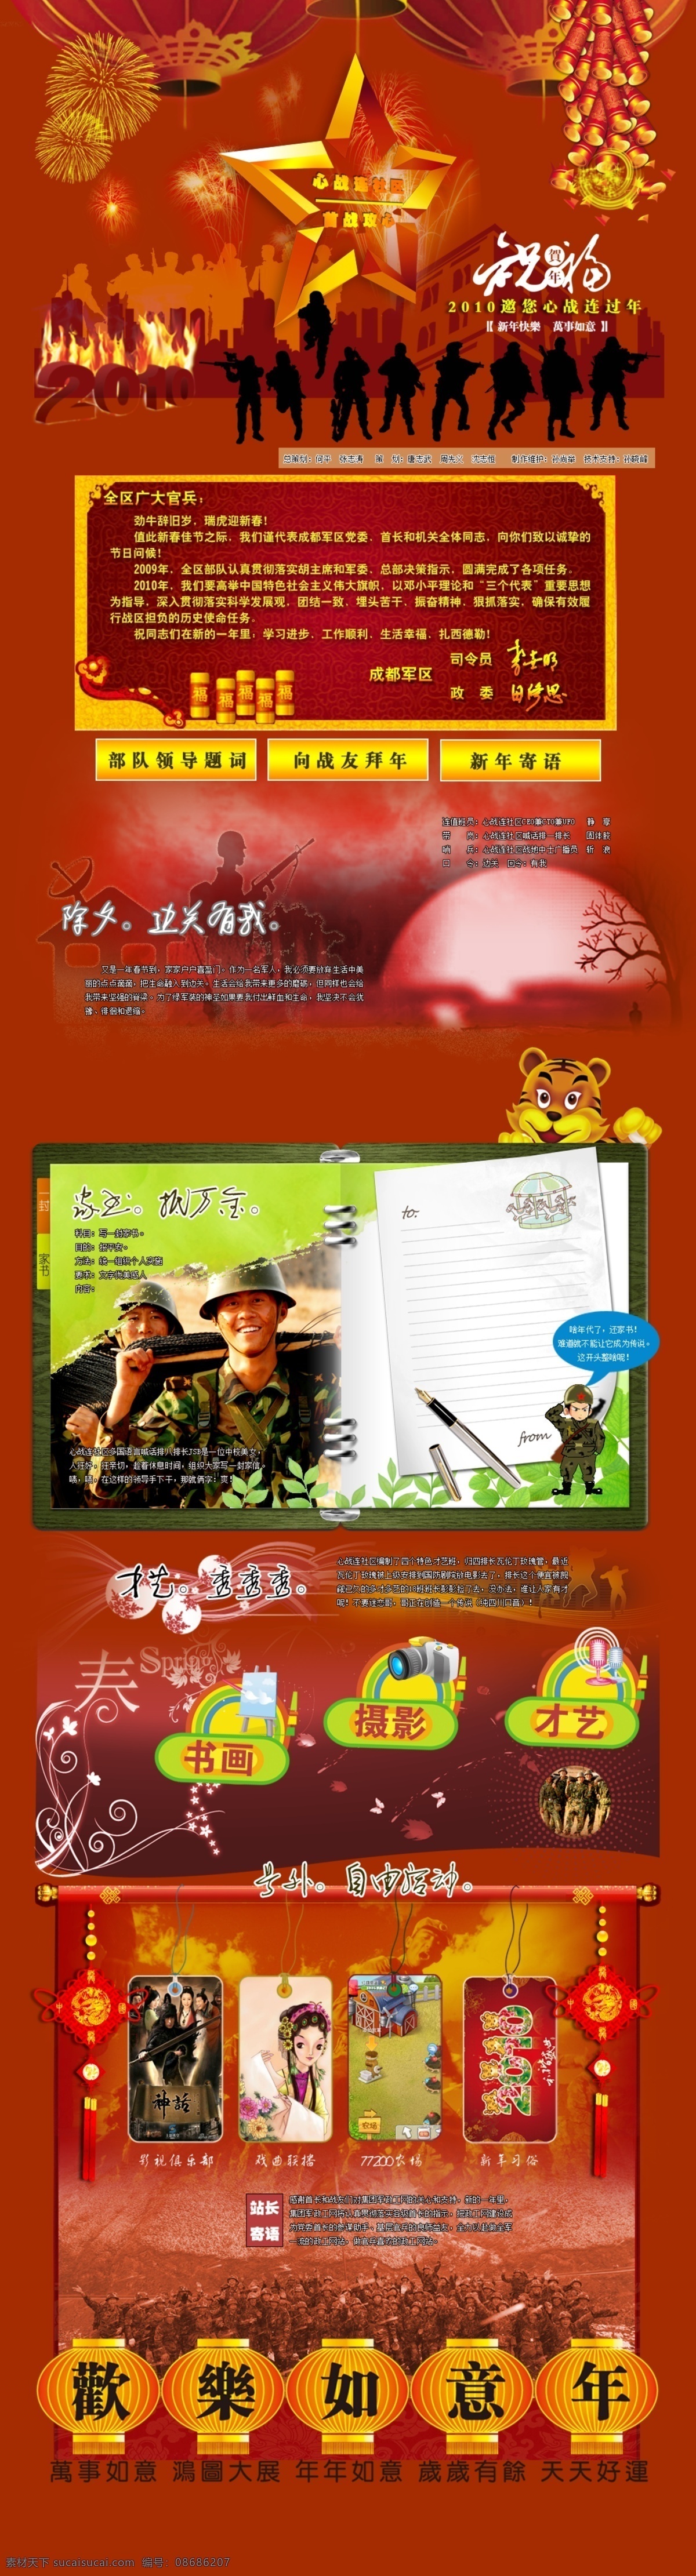 2010 新年 专题 网页 网页模板 源文件 中文模版 年 网页素材